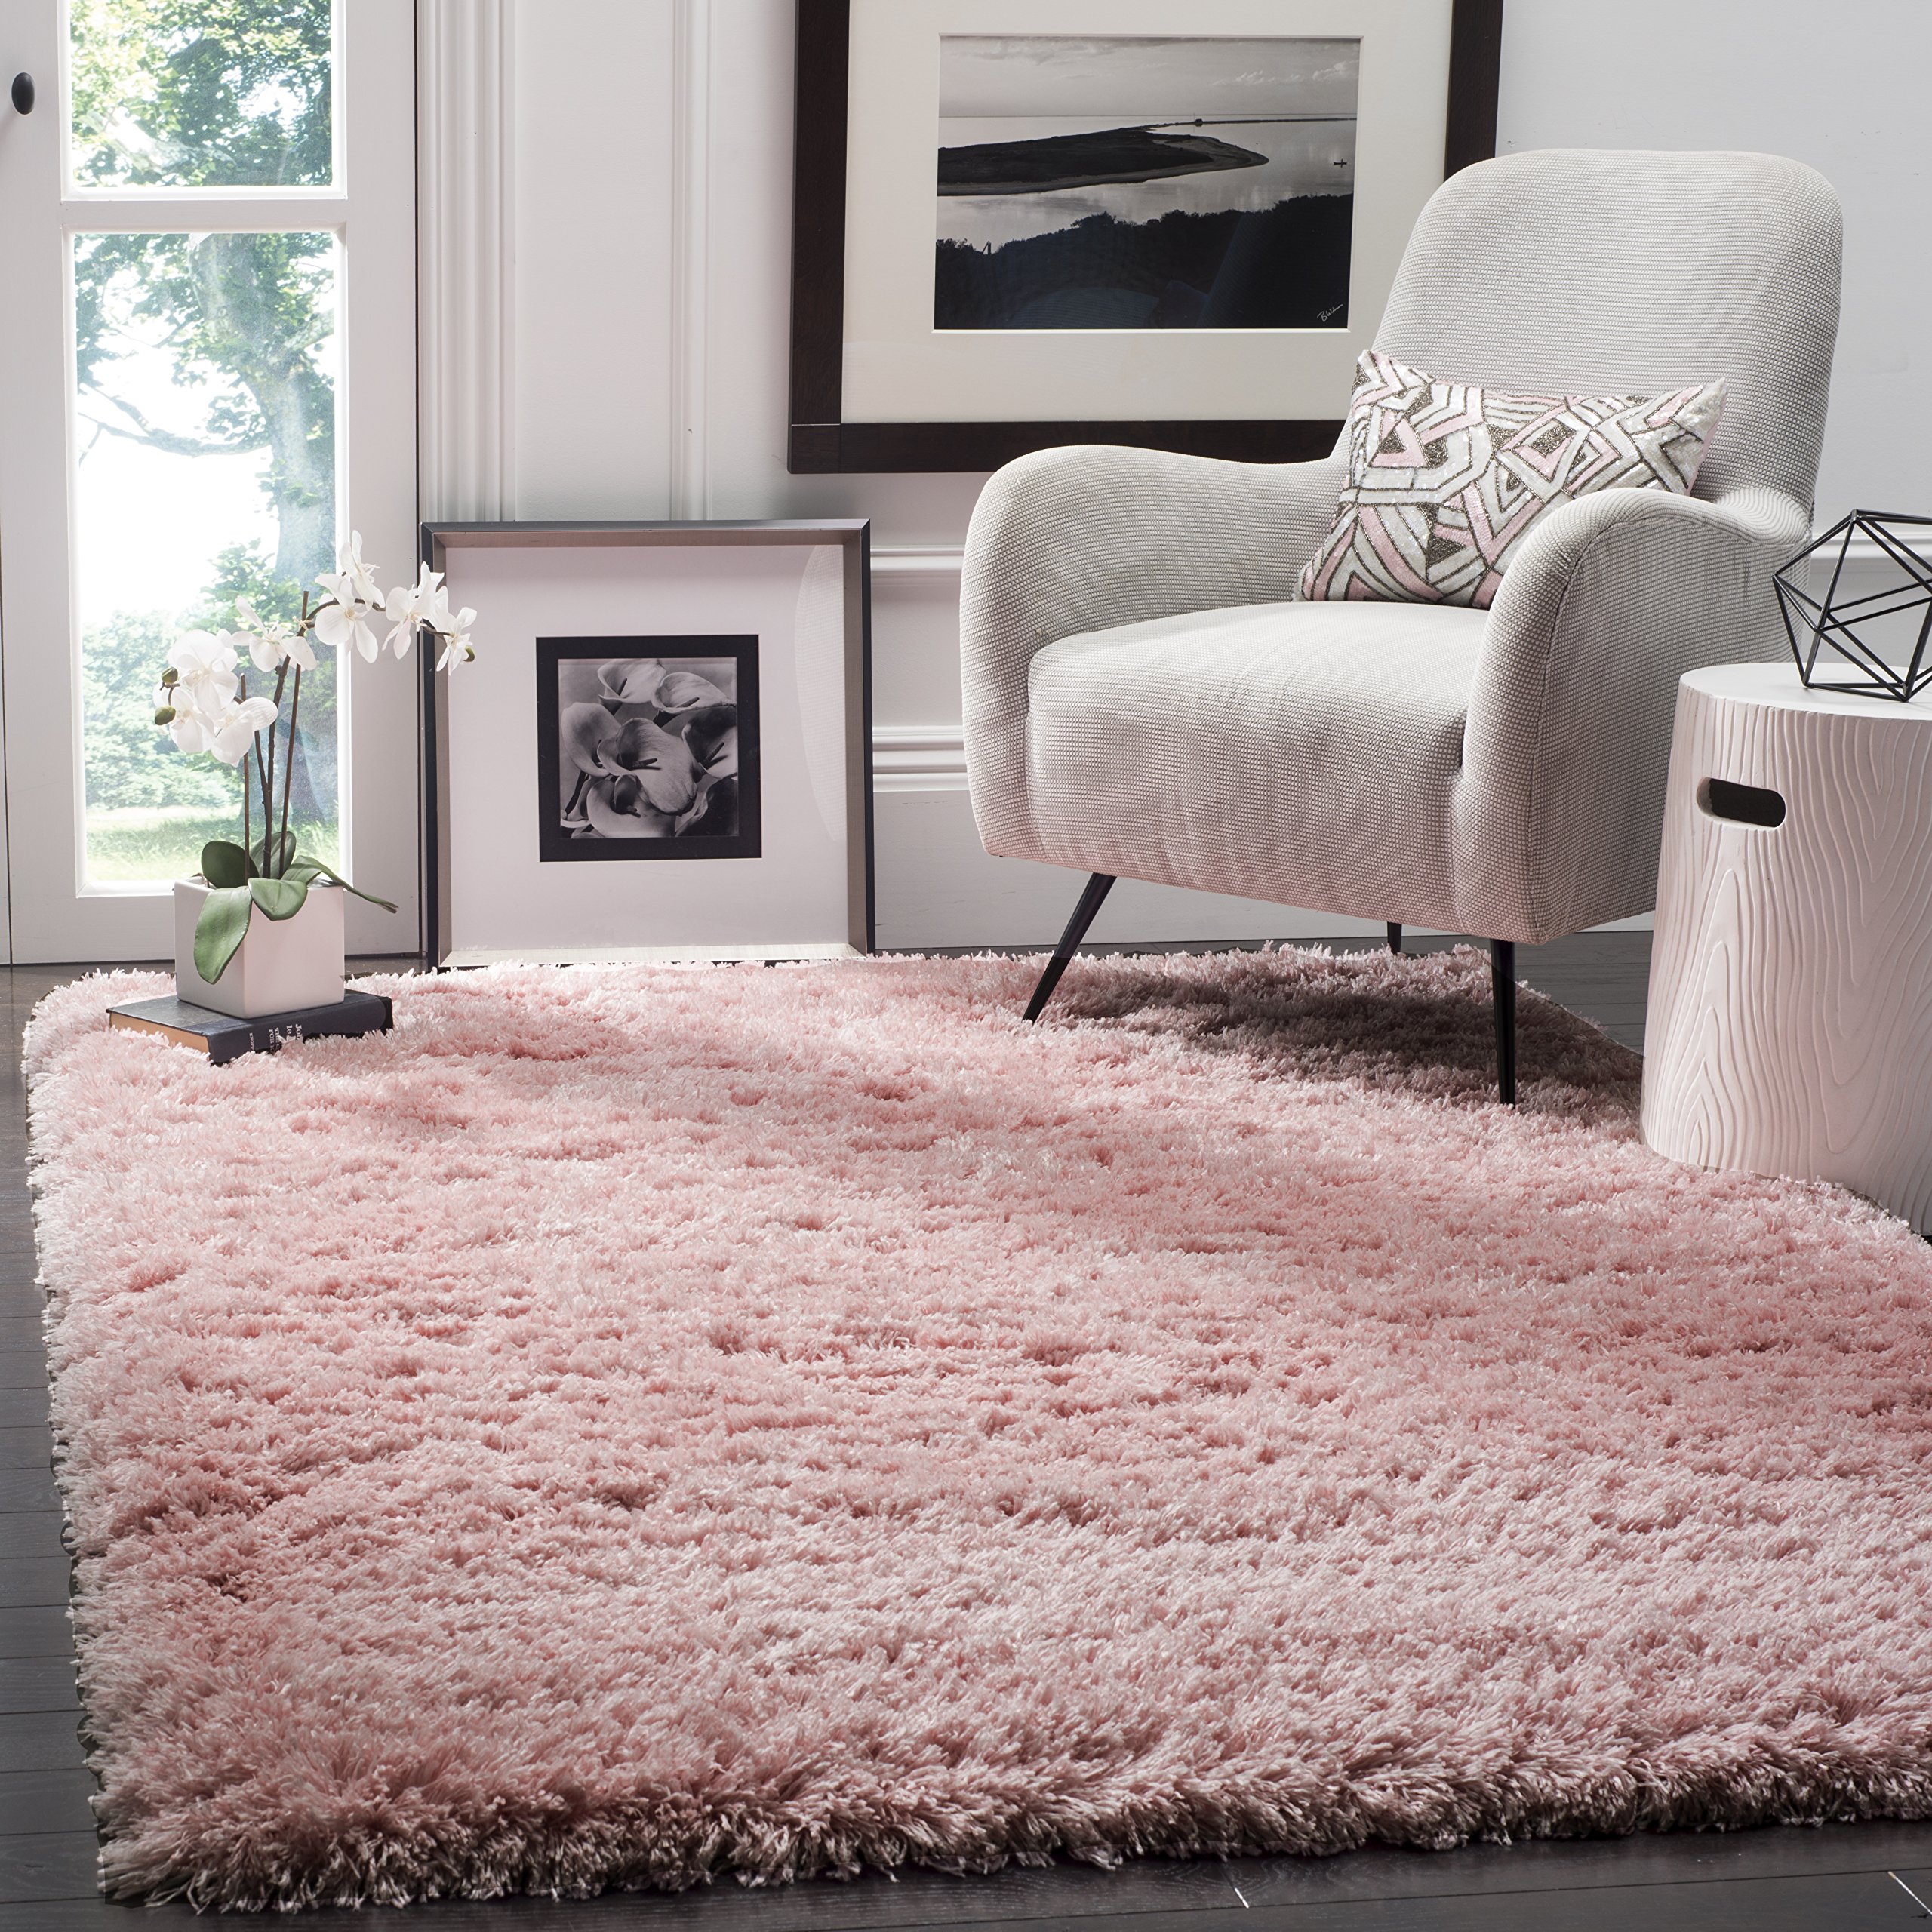 Safavieh Polar Shag 系列特色地毯 - 4 英寸 x 6 英寸，浅粉色，纯色迷人设计，不脱落...